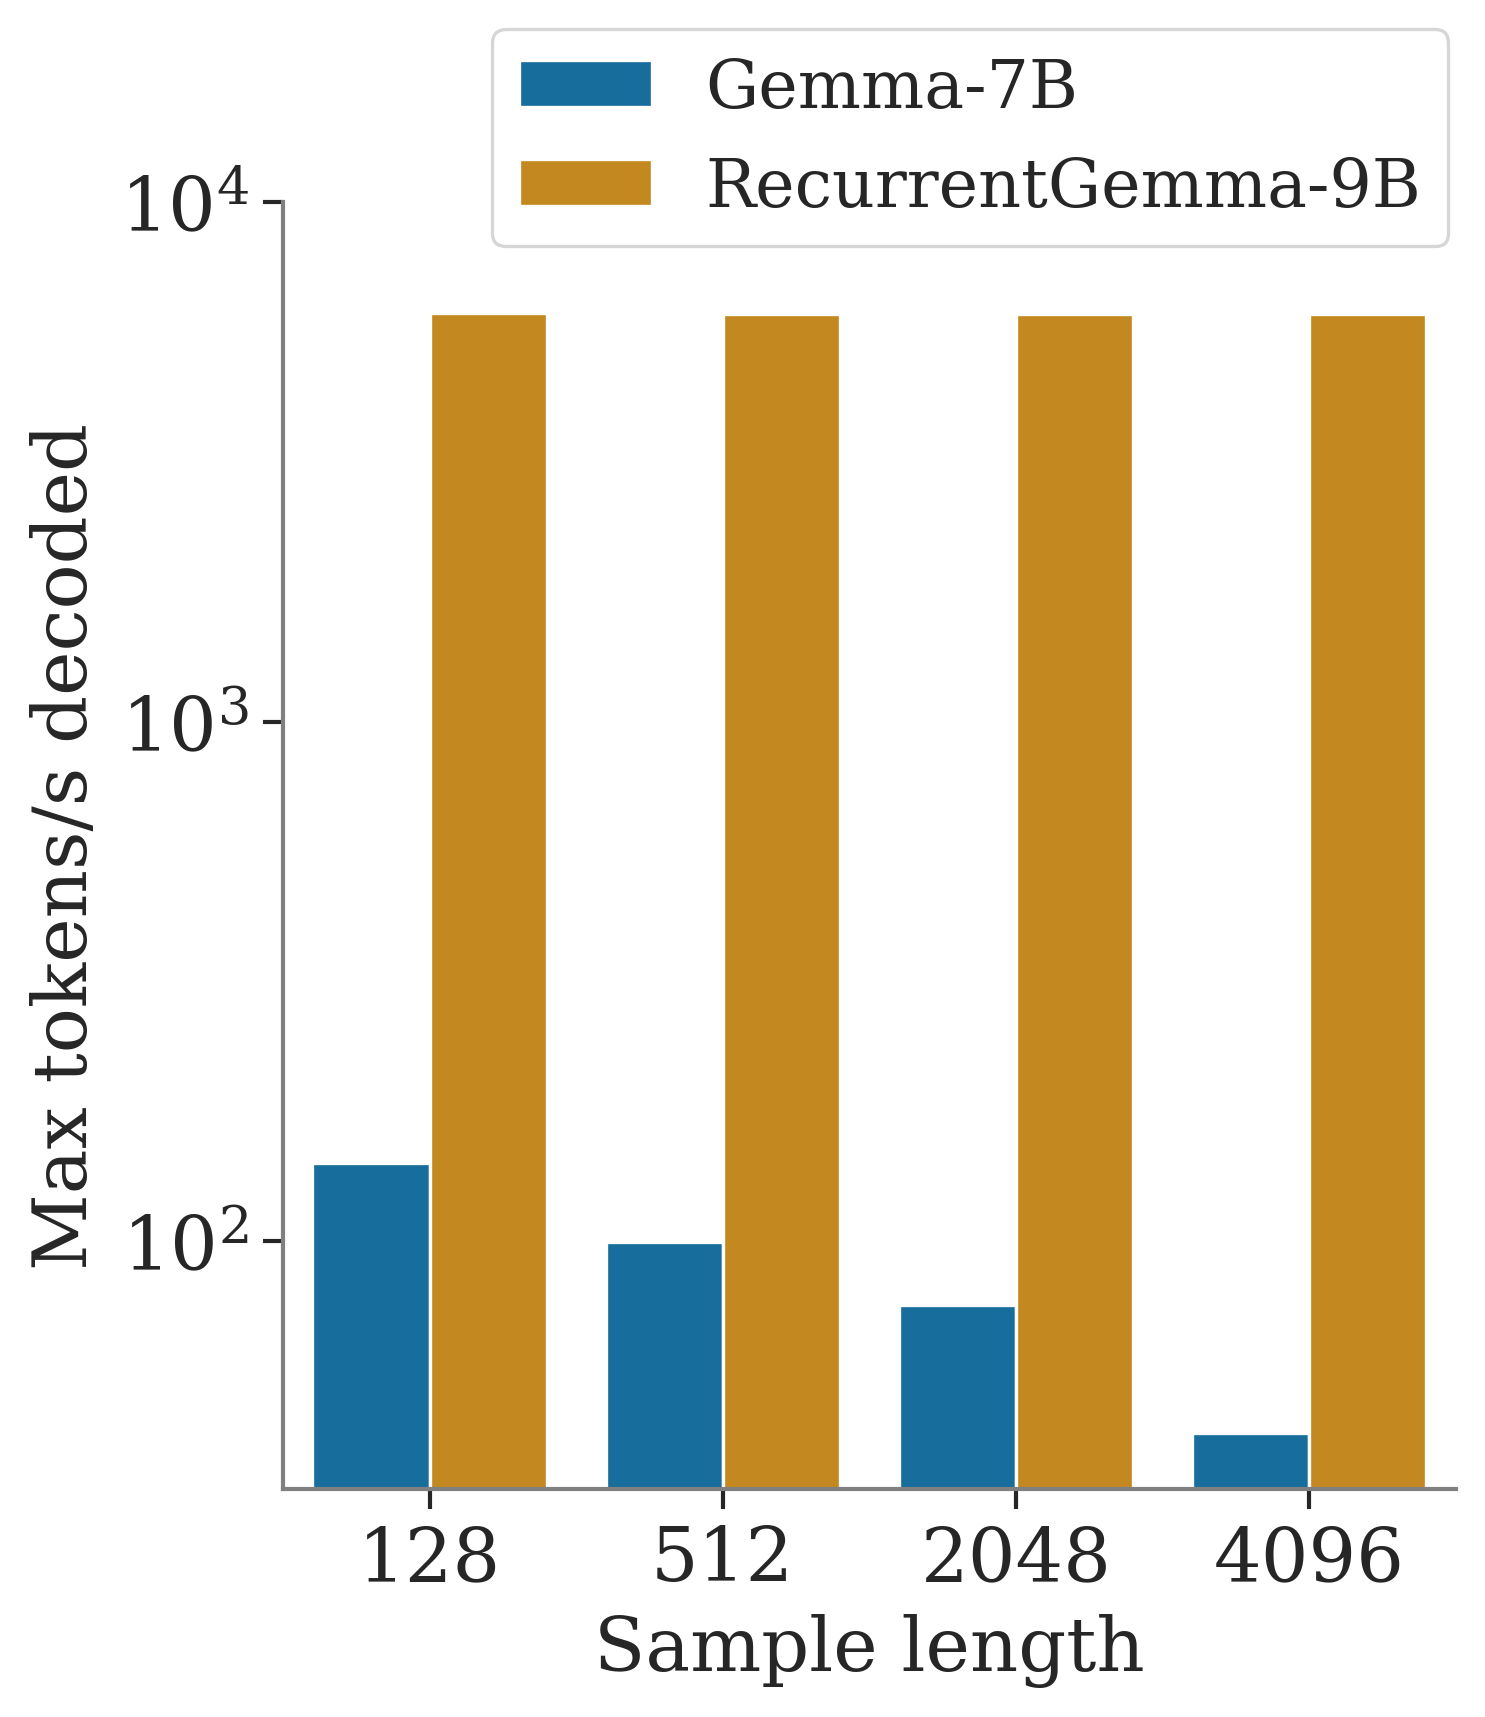 Maximum Throughput comparison of RecurrentGemma-9B and Gemma-7B